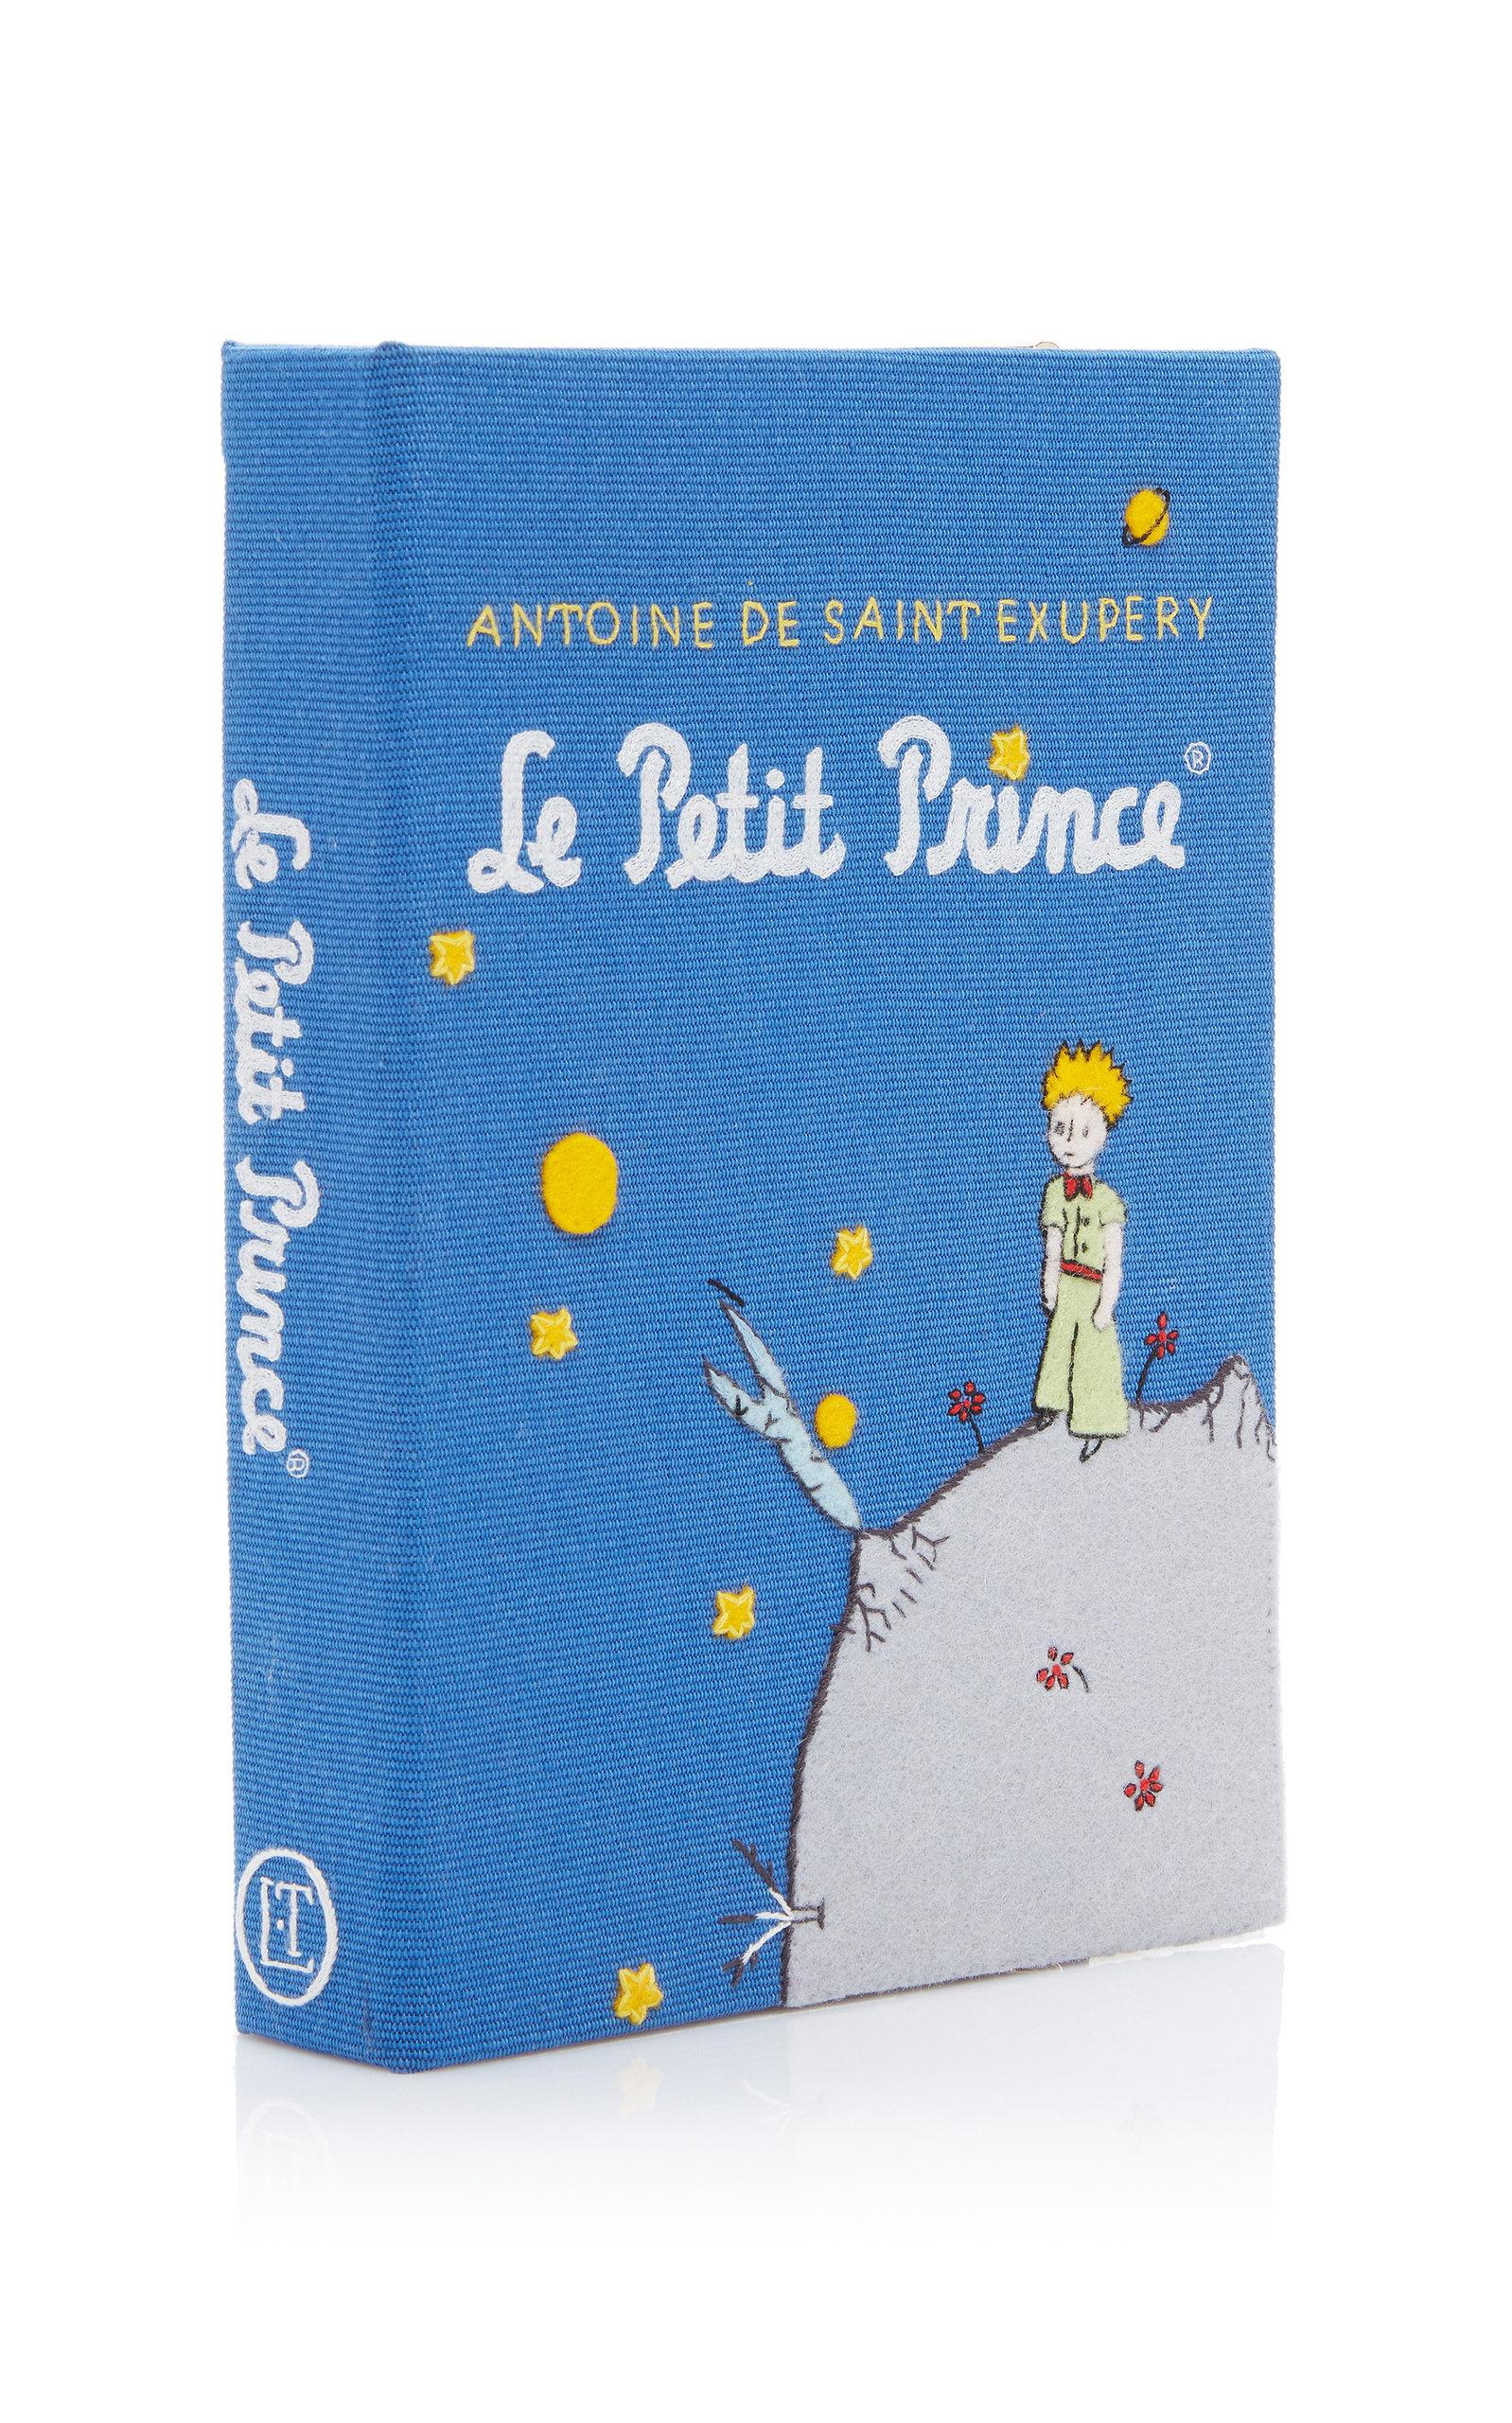 Le Petit Prince Little Prince Book Clutch handmade purse